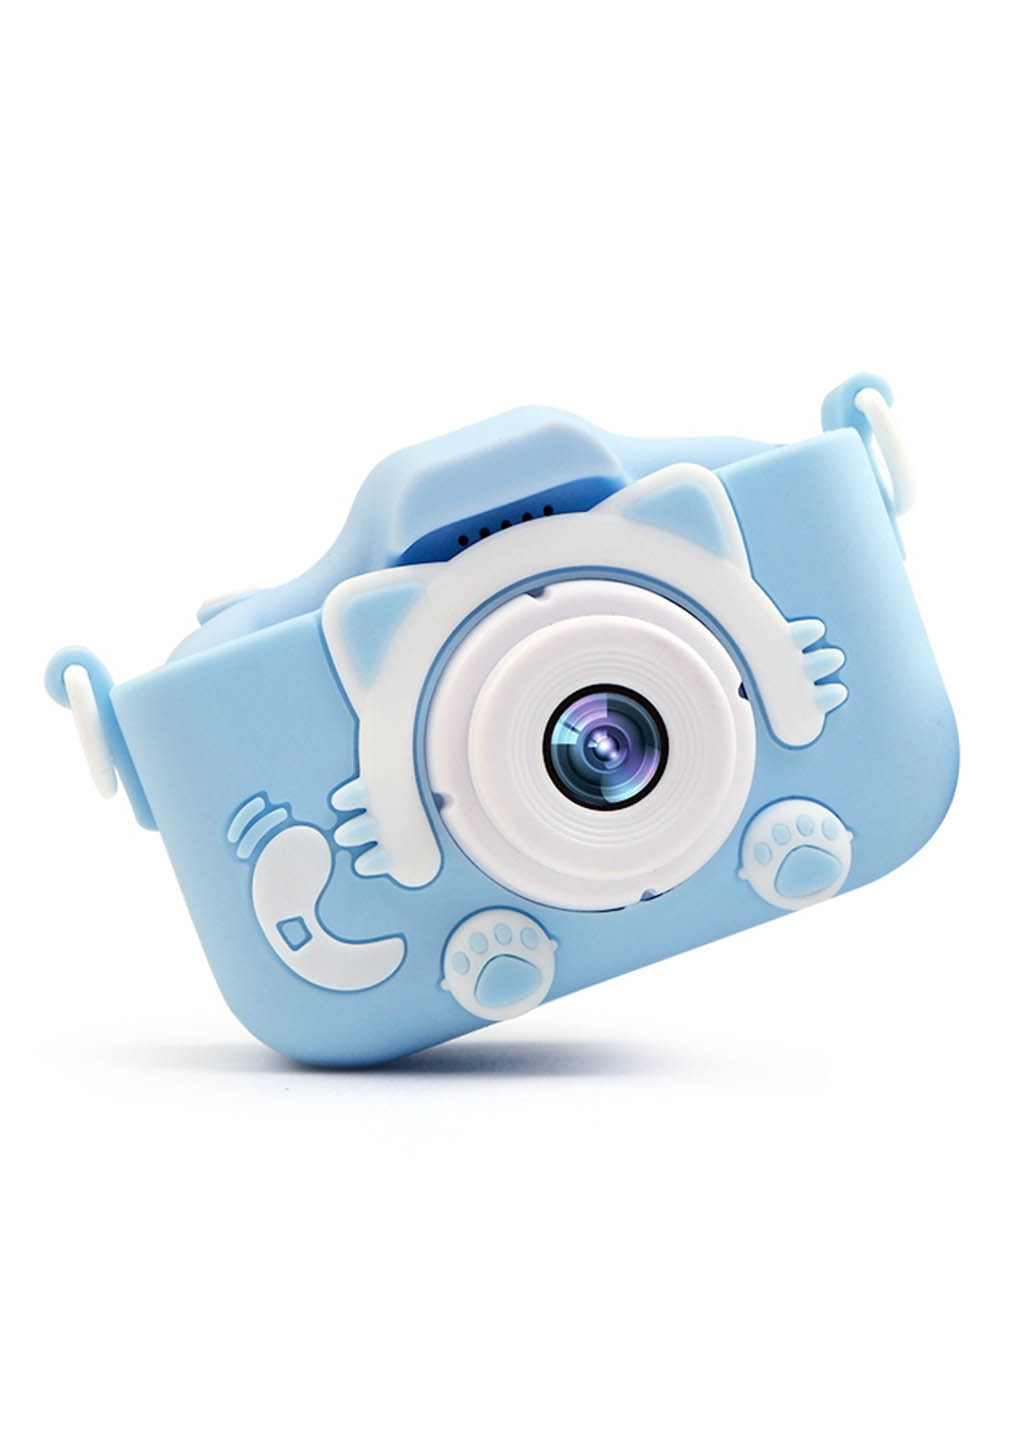 Силиконовый чехол и ремешок для цифрового детского фотоаппарата KVR-001 голубой (KVR-001-CS-BL) XoKo силиконовый чехол и ремешок для цифрового детского фотоаппарата xoko kvr-001 голубой (kvr-001-cs-bl) (286304923)